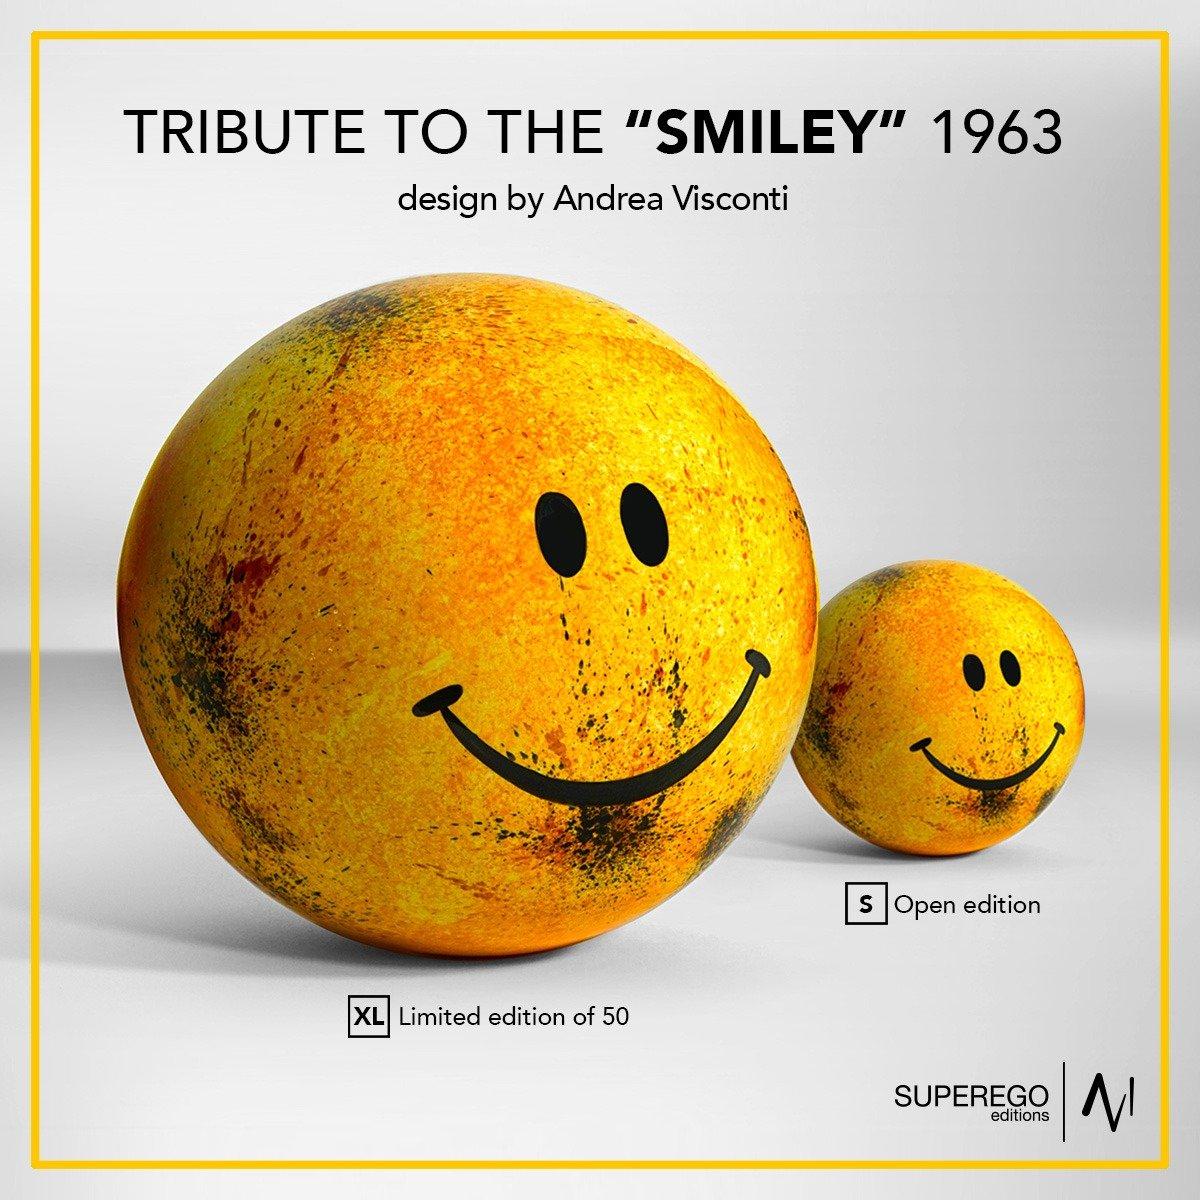 Tributo allo Smile 1963 di Andrea Visconti - Grande Smile giallo in ceramica  For Sale 1